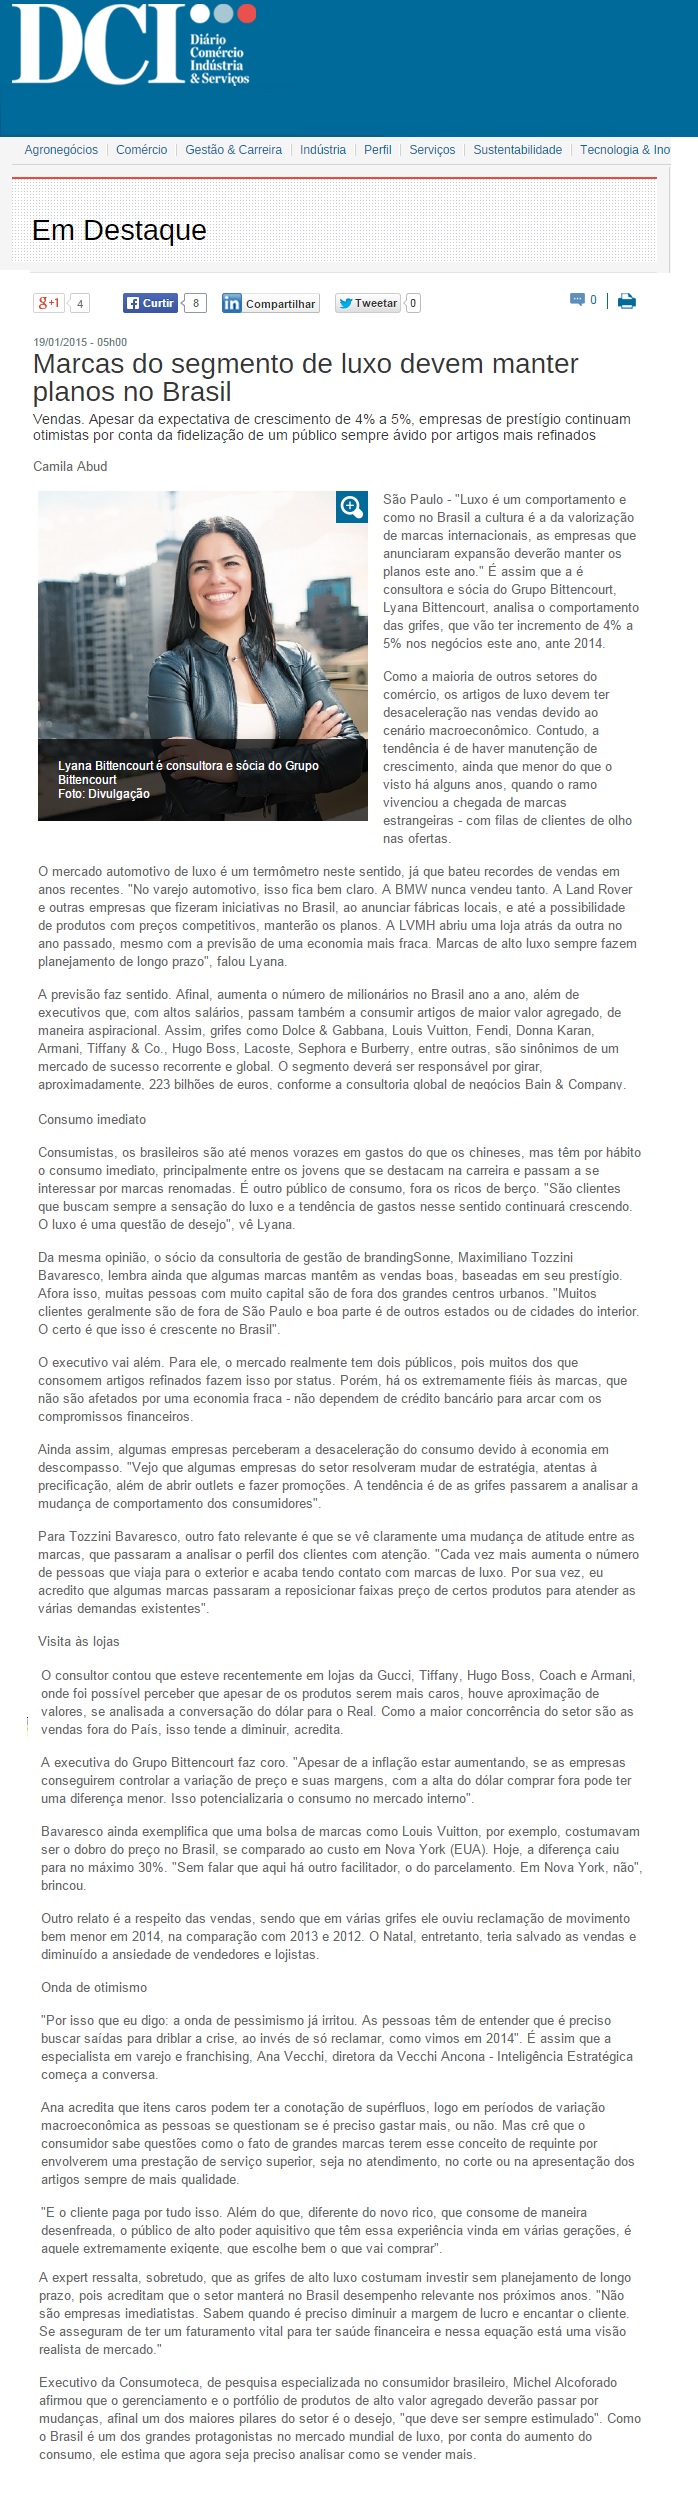 Consumoteca no Jornal DCI - 19.01.2015